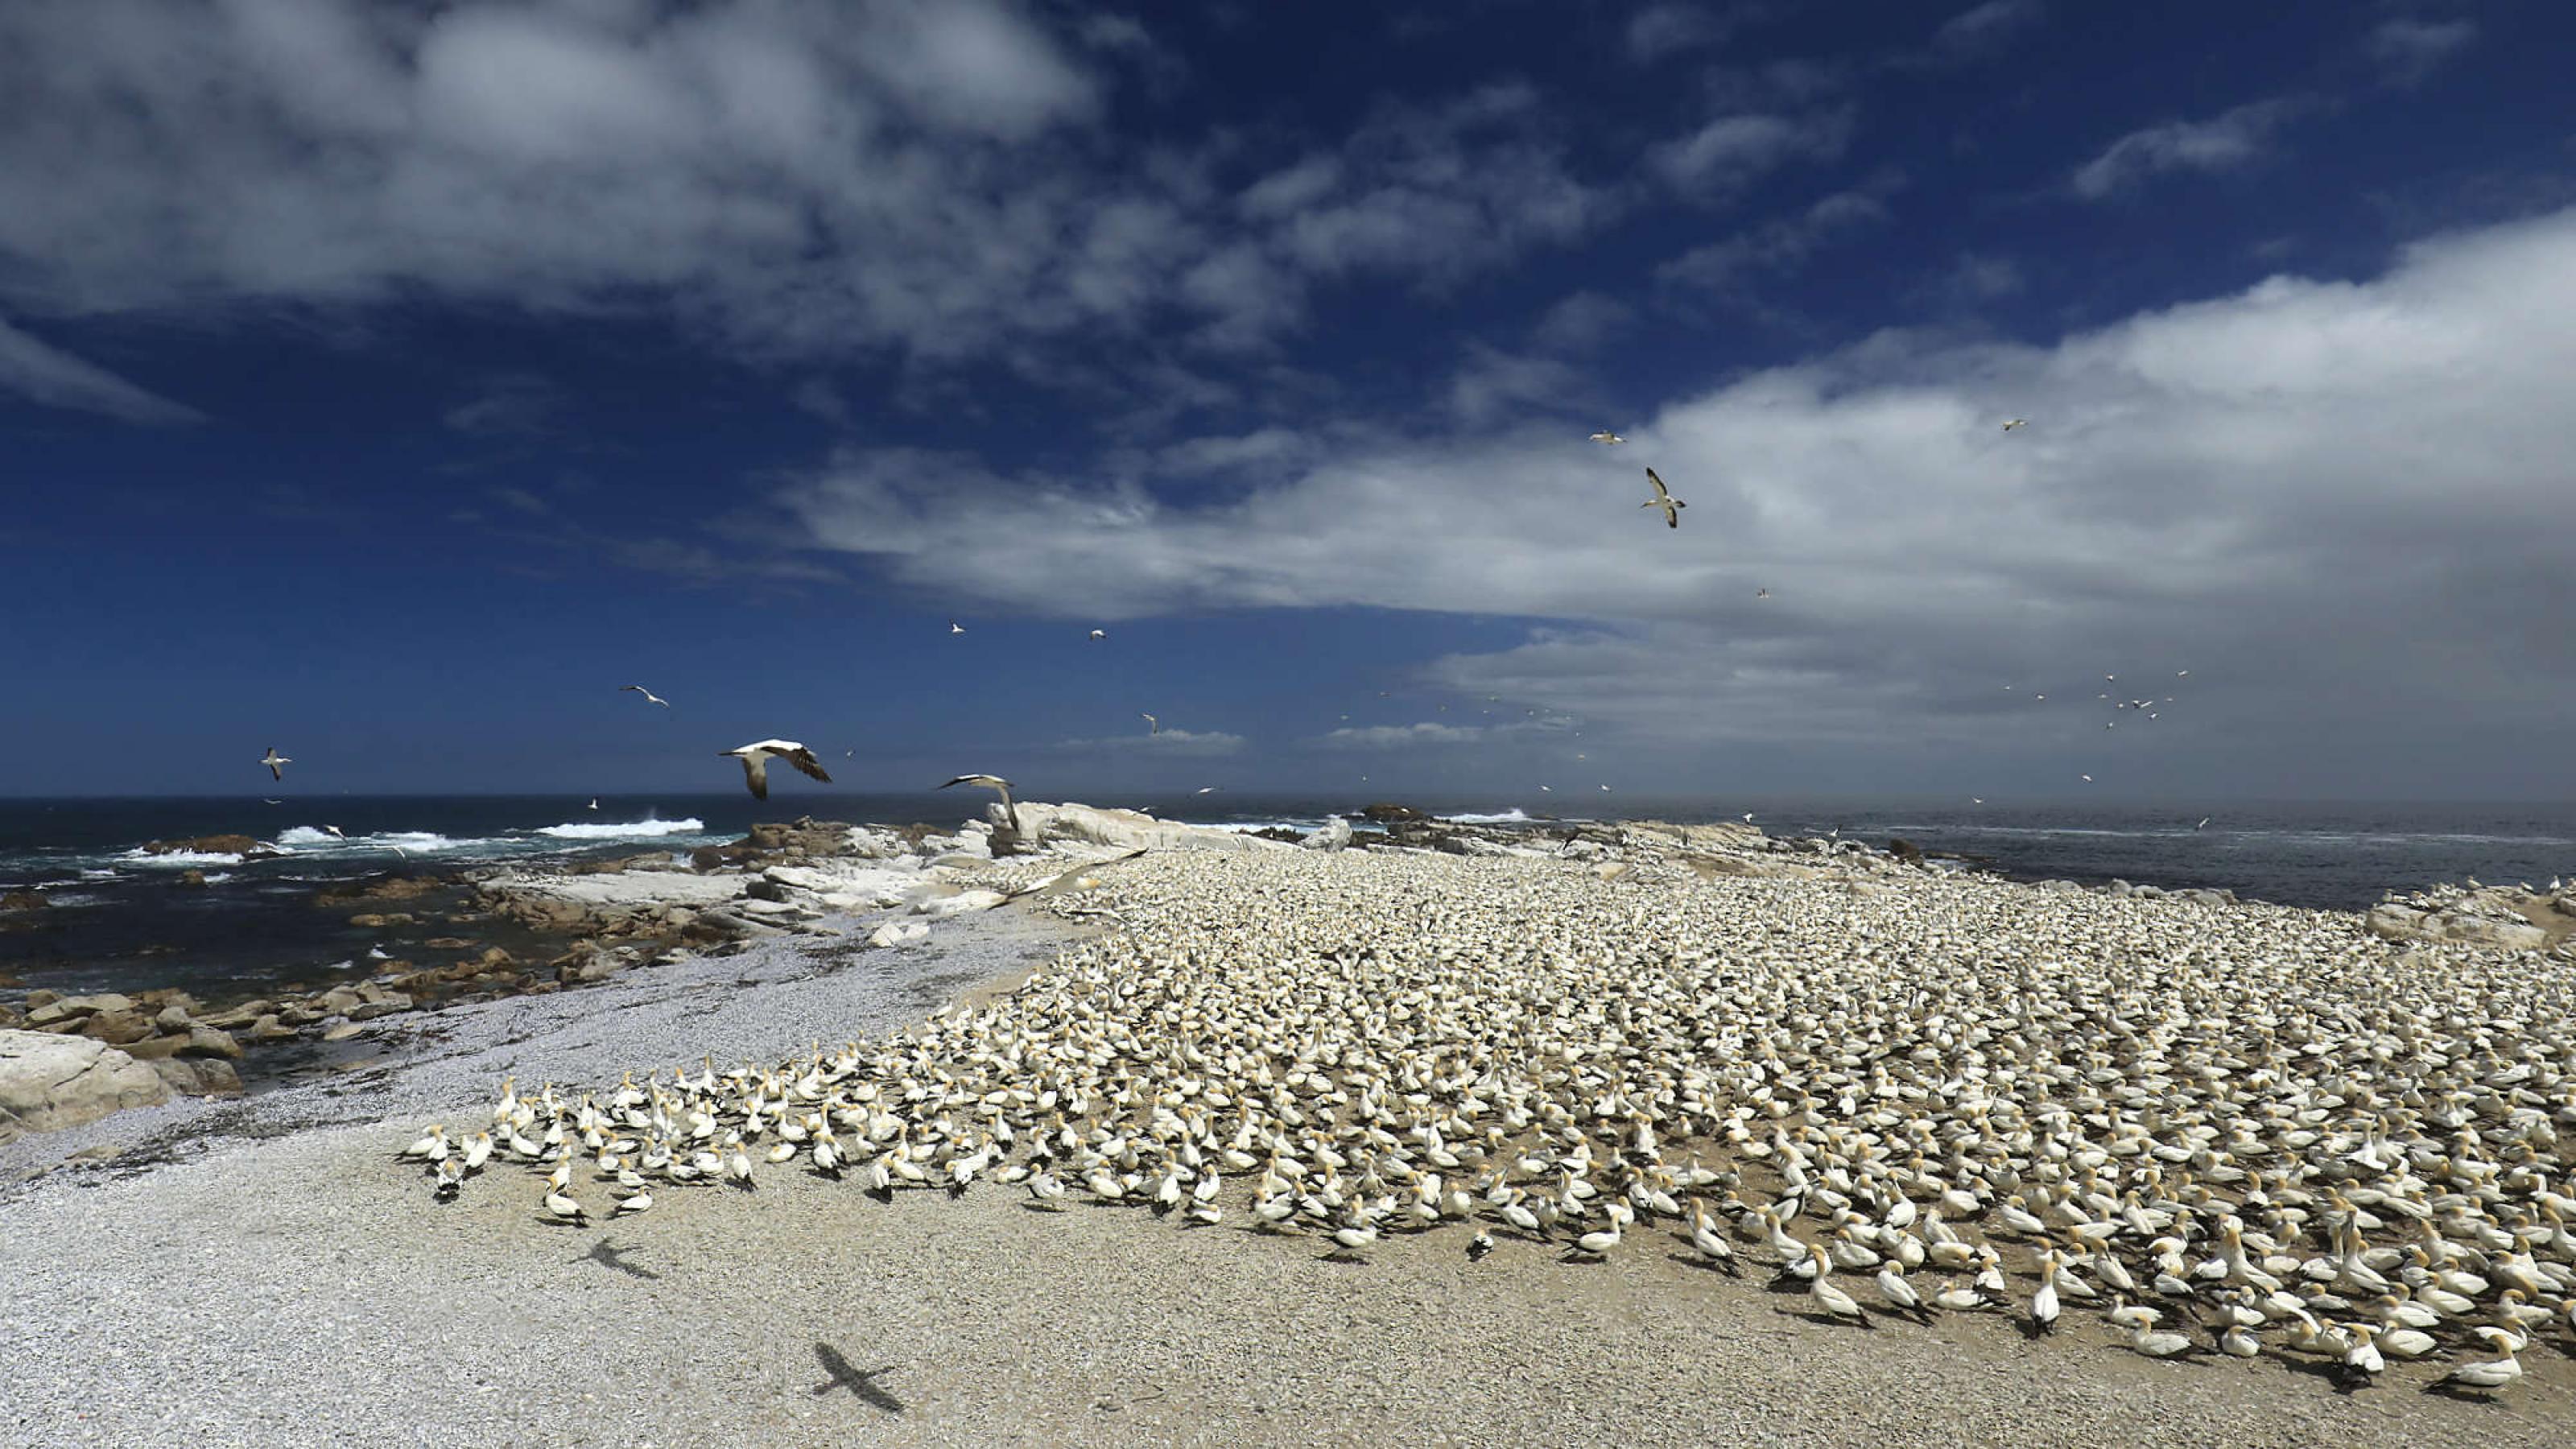 Zehntausende Vögel sitzen auf dem Boden, im Hintergrund das Meer und weiße Wolken am blauen Himmel.